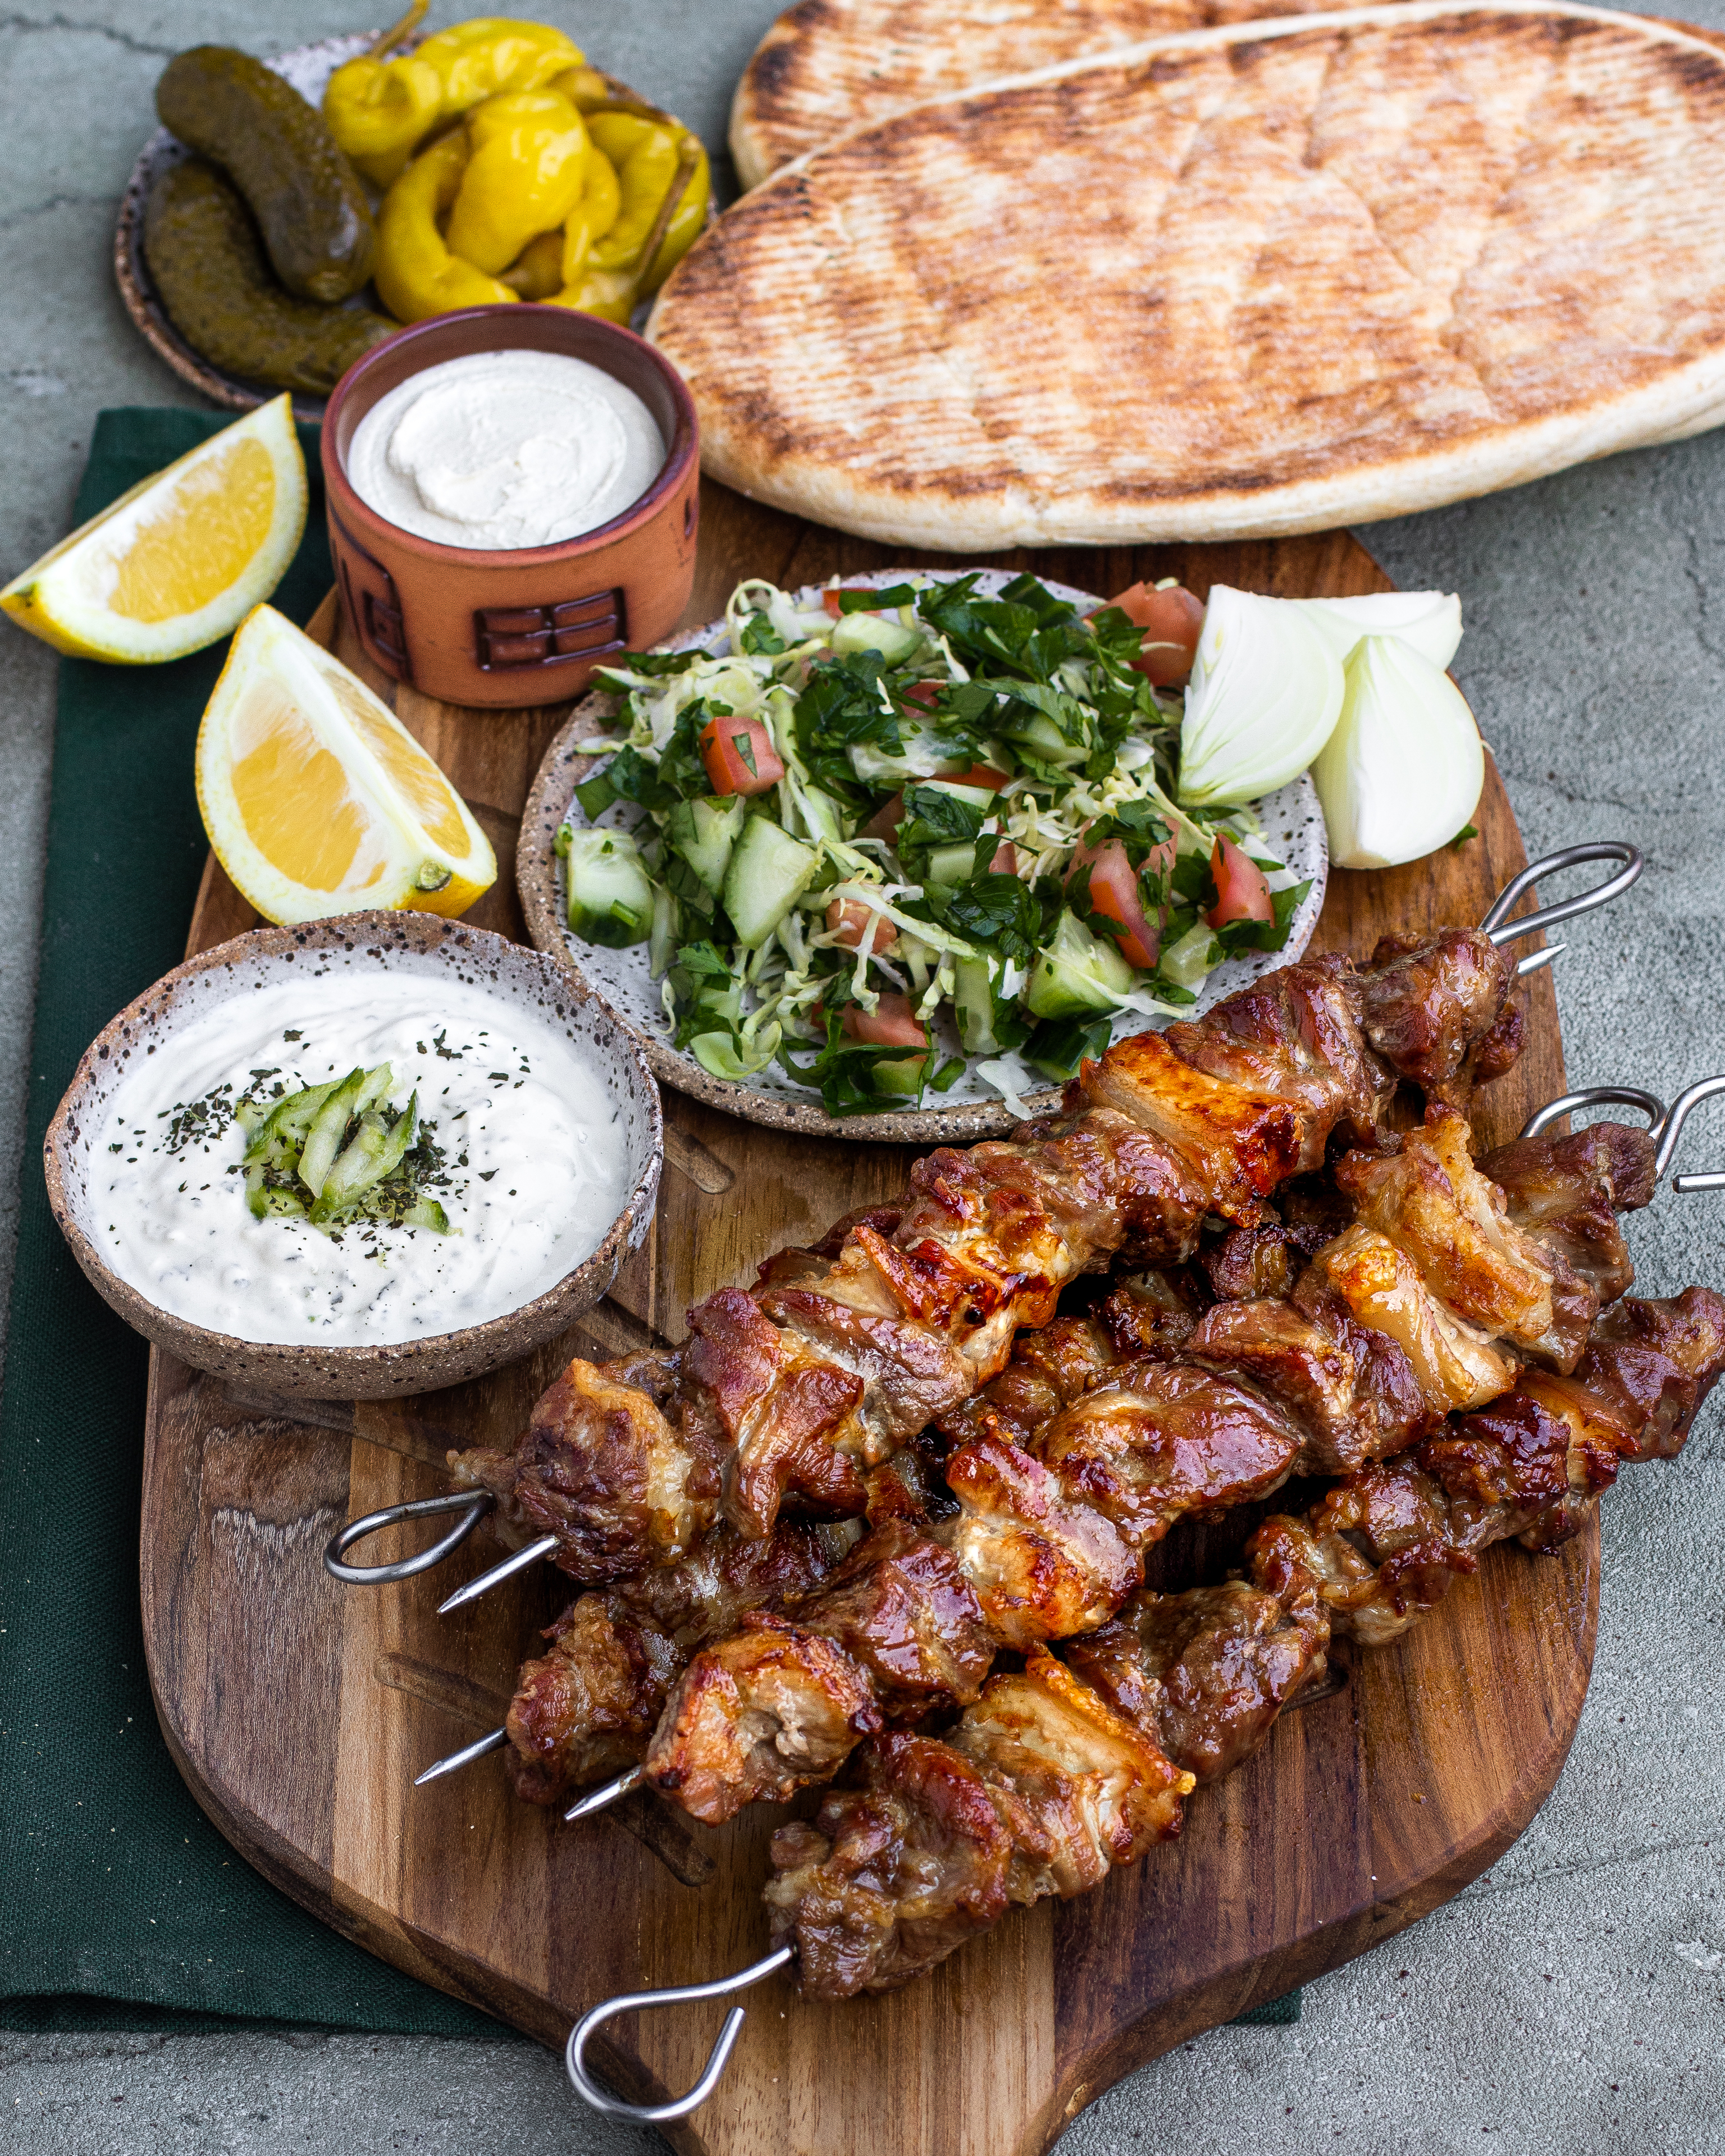 Una muestra de la rica gastronomía chipriota.